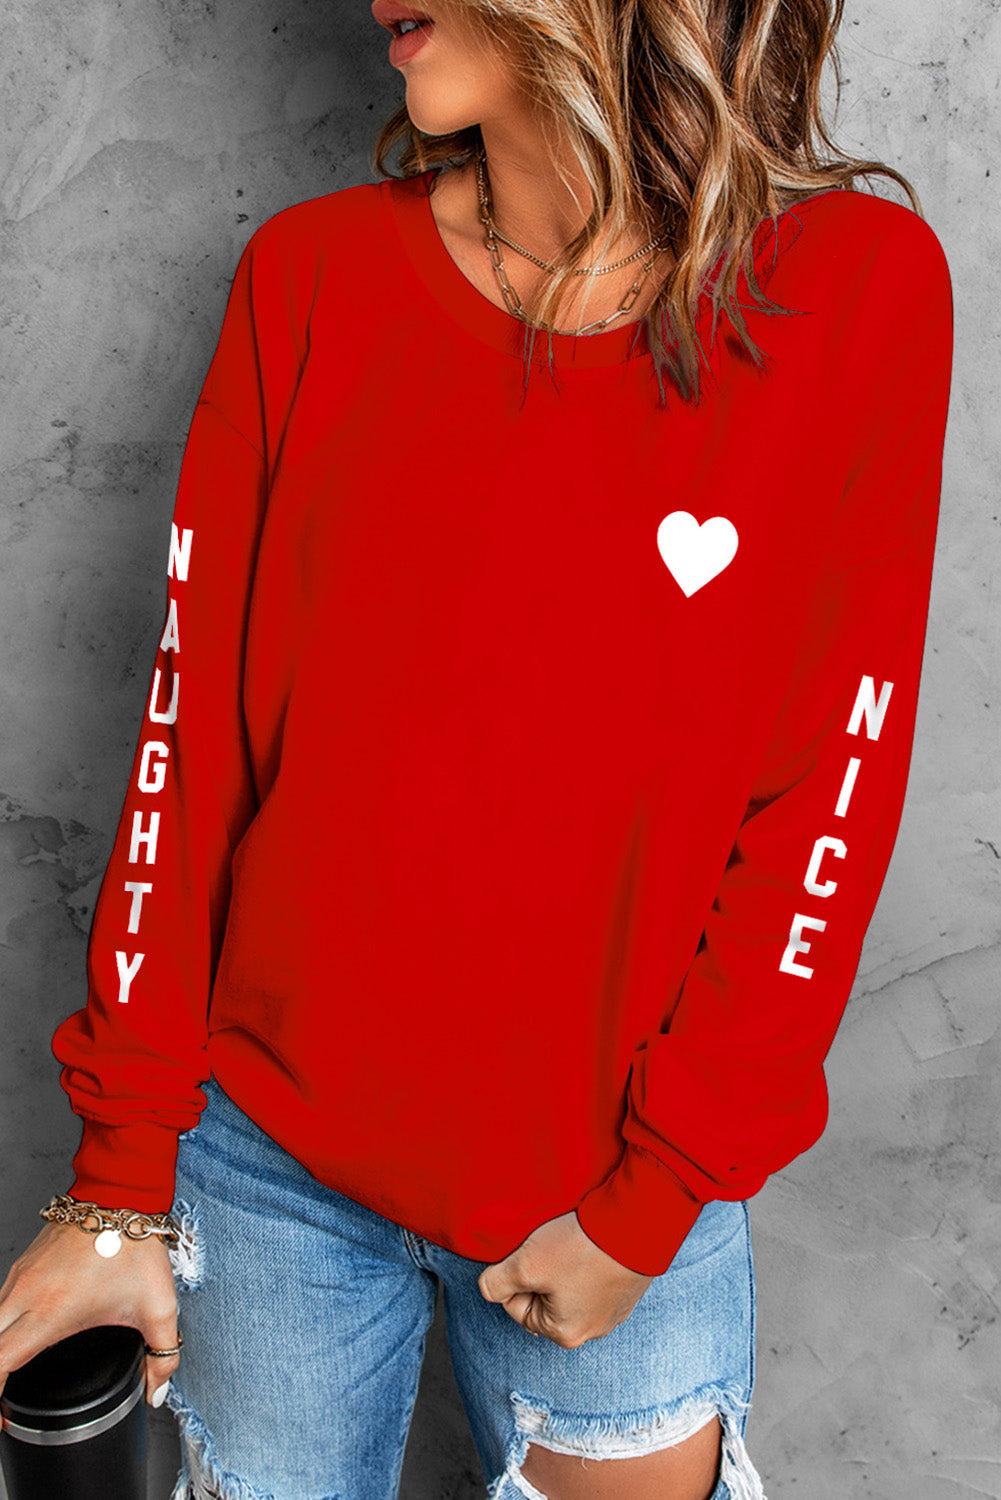 NAUGHTY NICE Heart Graphic Sweatshirt - Red / S - T-Shirts - Shirts & Tops - 1 - 2024